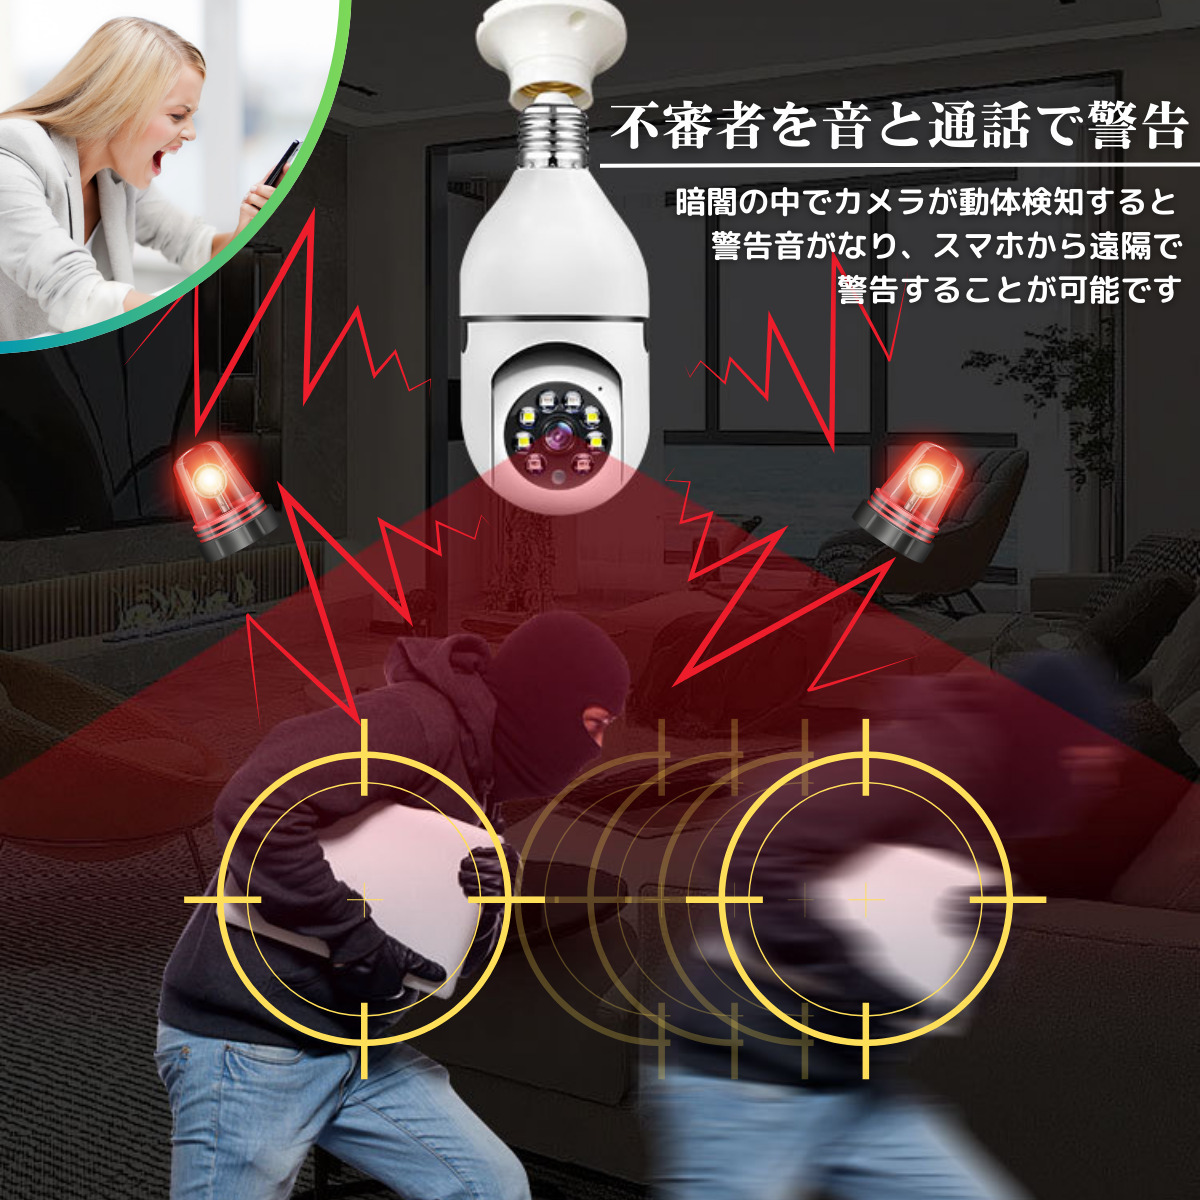 日本語アプリ　自動追尾音声警告可能　電球型防犯監視カメラ+128GBのTFカード付　電球型防犯カメラ ペットカメラ ネットワークカメラ　　